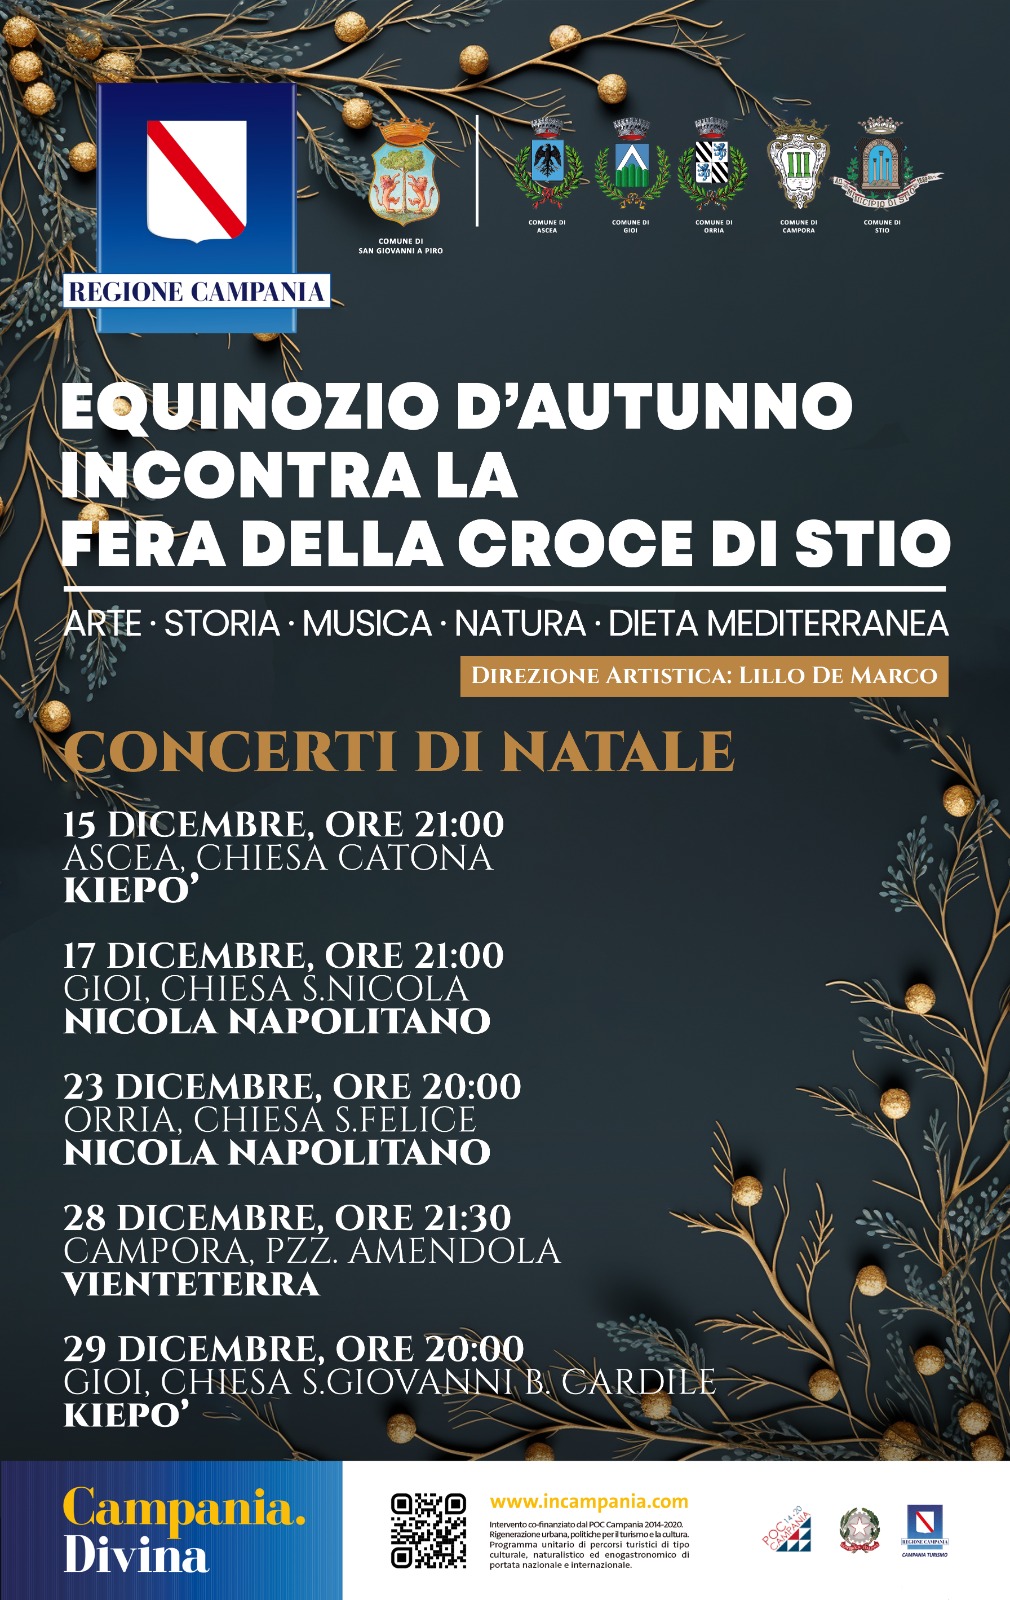 Cilento, al via ai concerti di Natale con la musica della tradizione: eventi a Ascea, Gioi, Orria e Campora